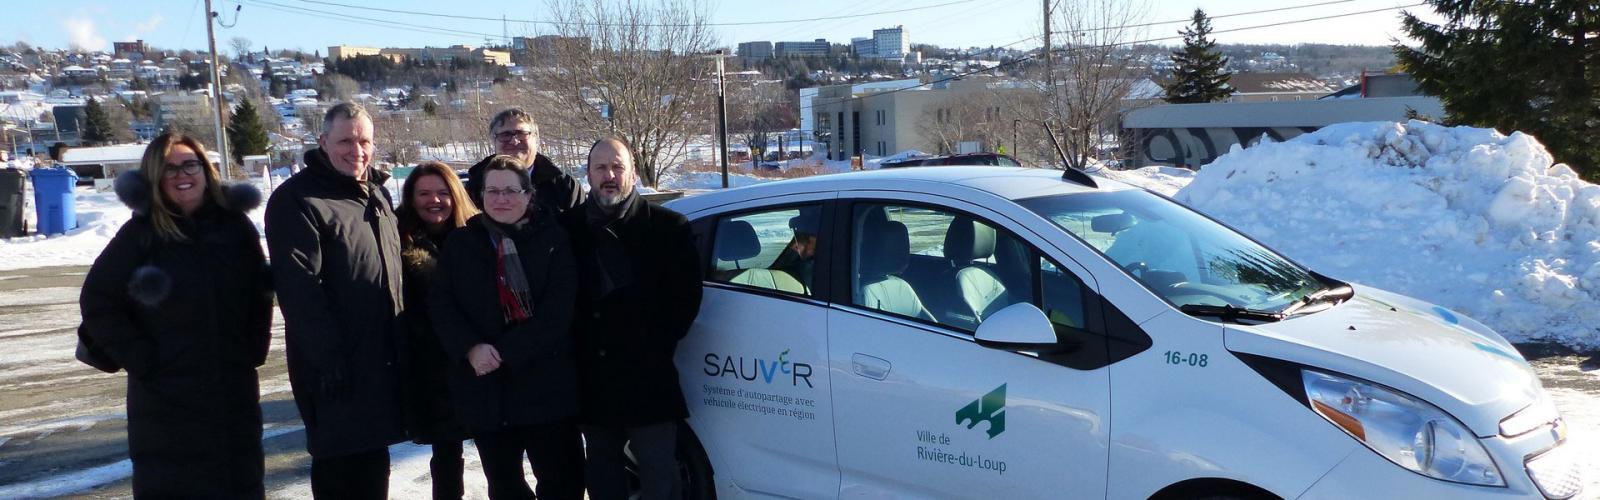 Des représentants des municipalités sourient à la caméra devant l’un des véhicules électriques, par une journée d’hiver ensoleillée.